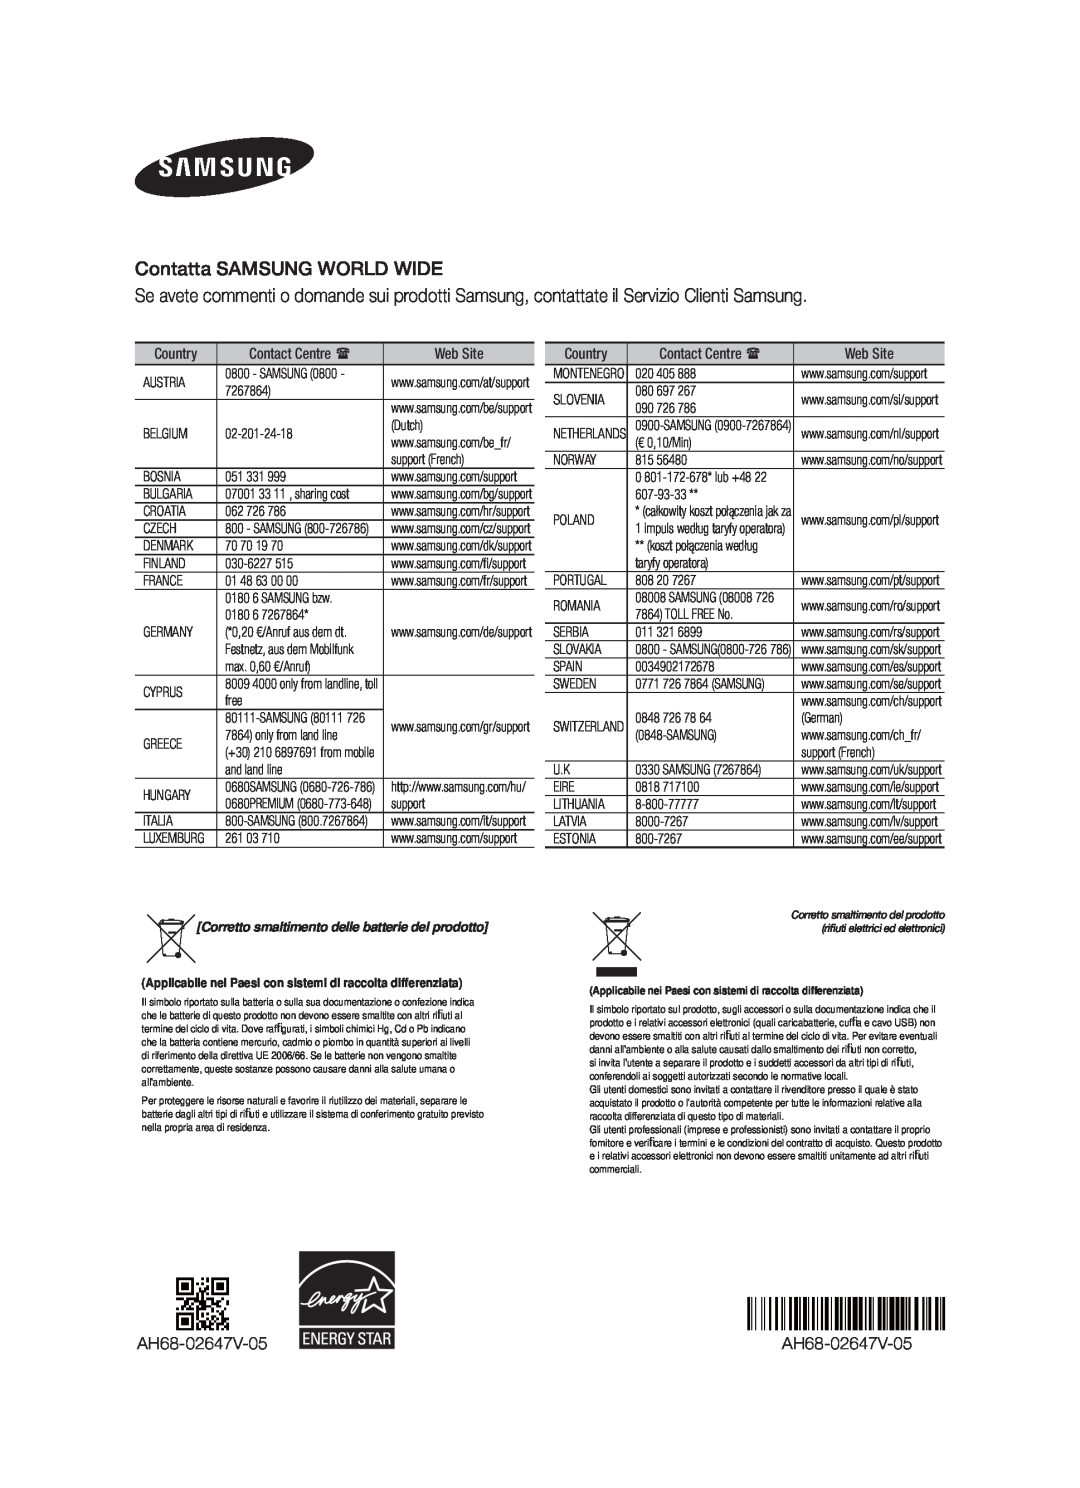 Samsung HW-F550/EN manual Contatta SAMSUNG WORLD WIDE, AH68-02647V-05, Corretto smaltimento delle batterie del prodotto 